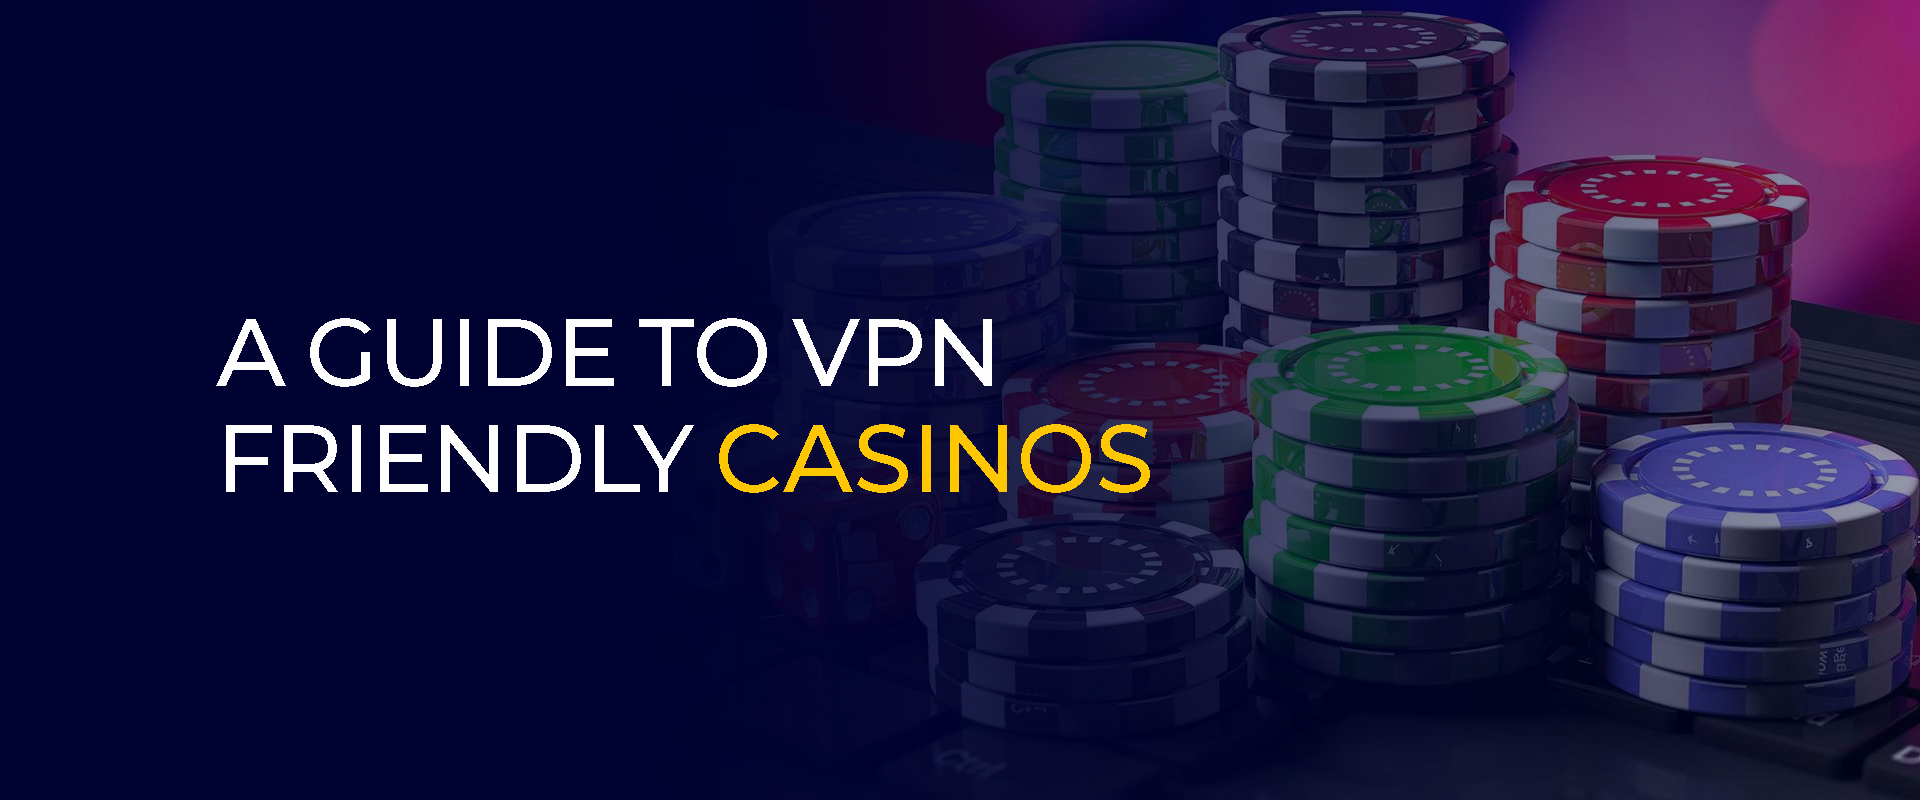 Panduan untuk Kasino Ramah VPN